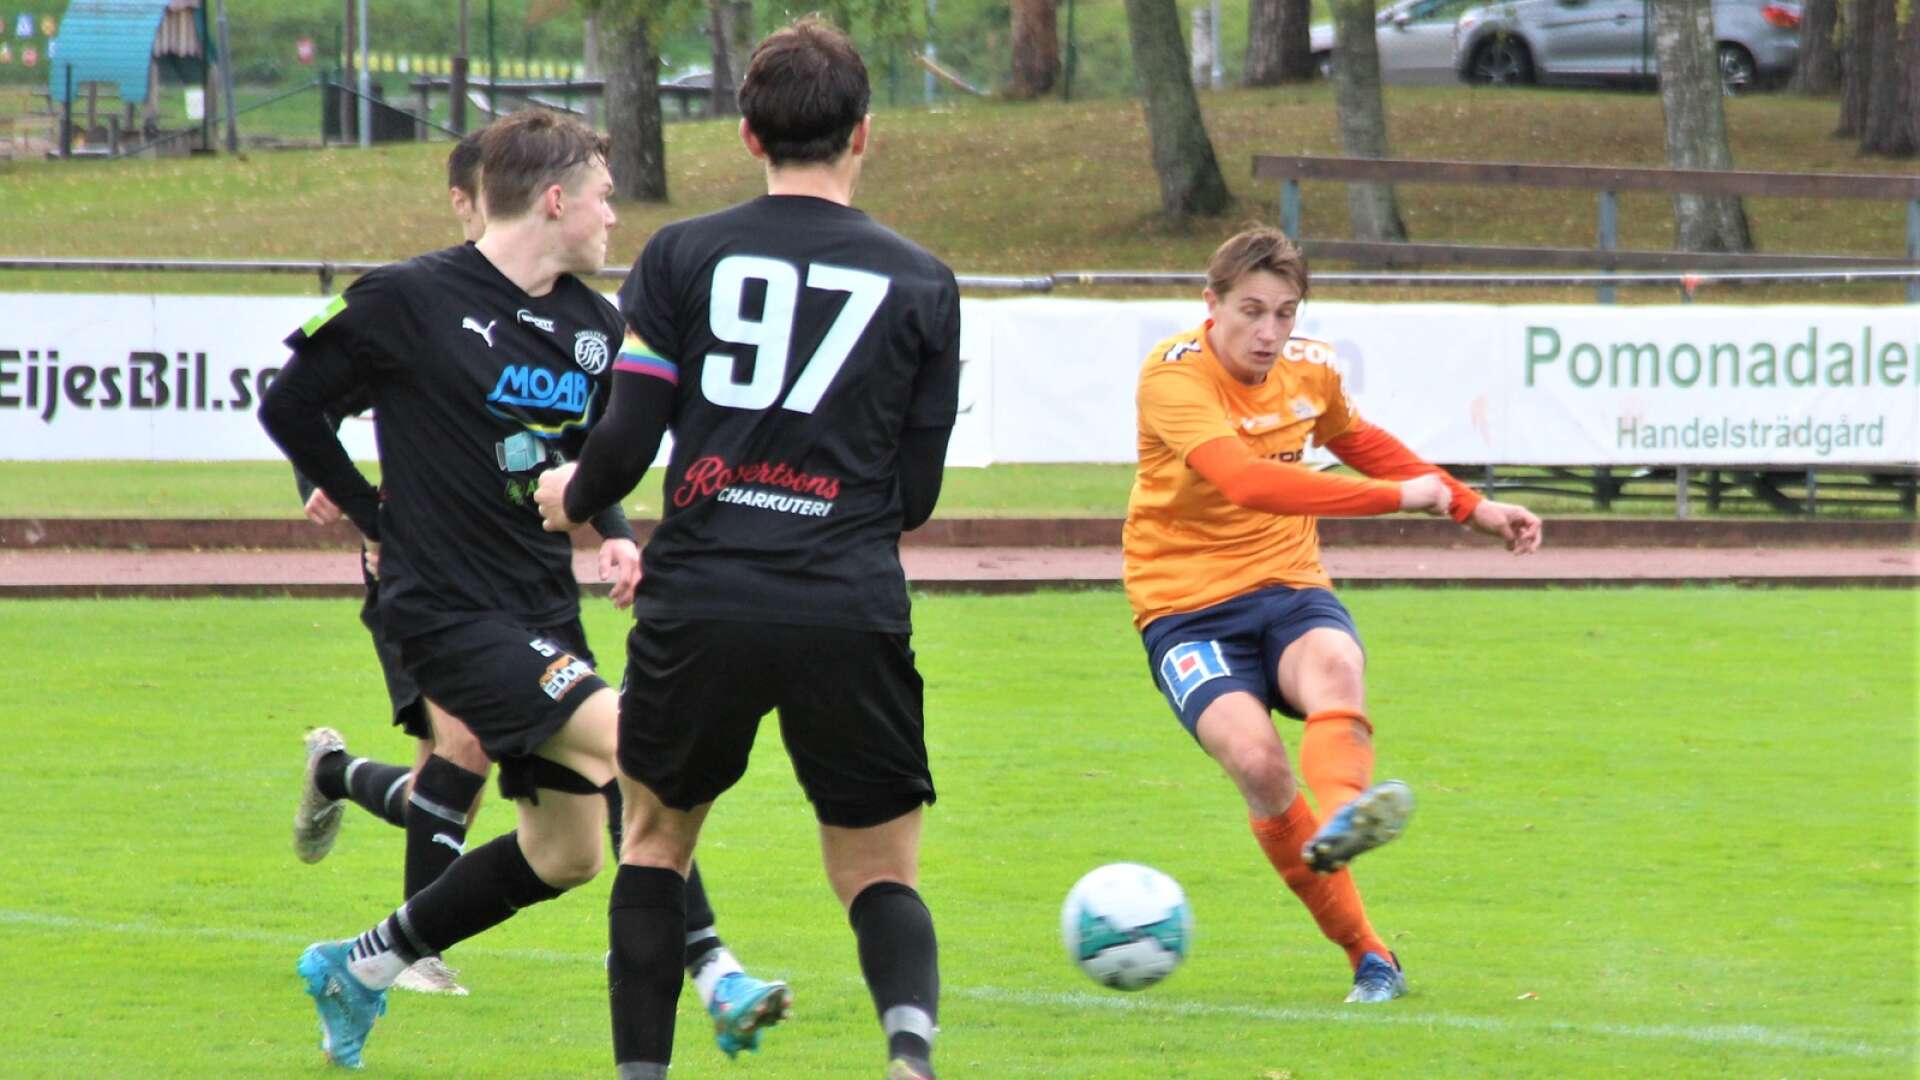 Säffle SK spelade 2-2 mot Yxhult på Sporthälla. Adrian Johansson avlossar ett långskott.